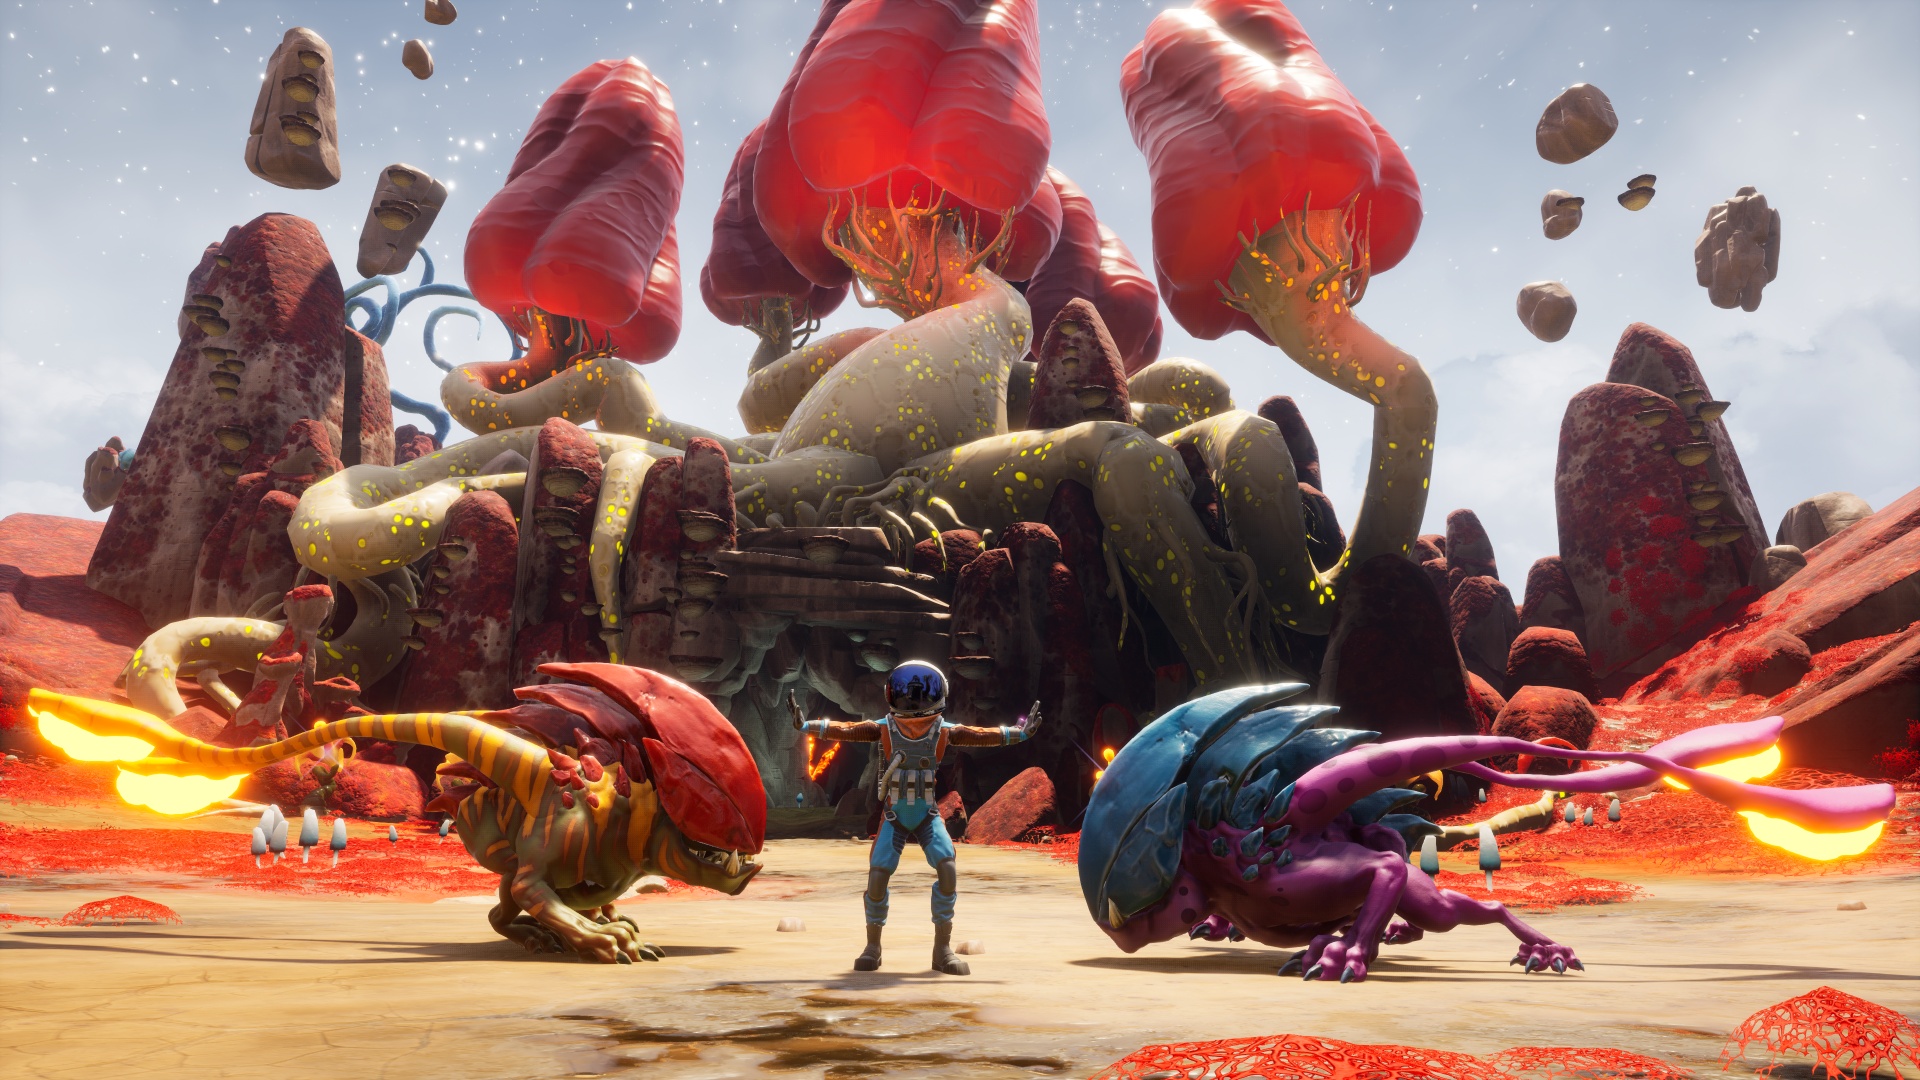 Journey to the Savage Planet: Jetzt auf der Xbox One!